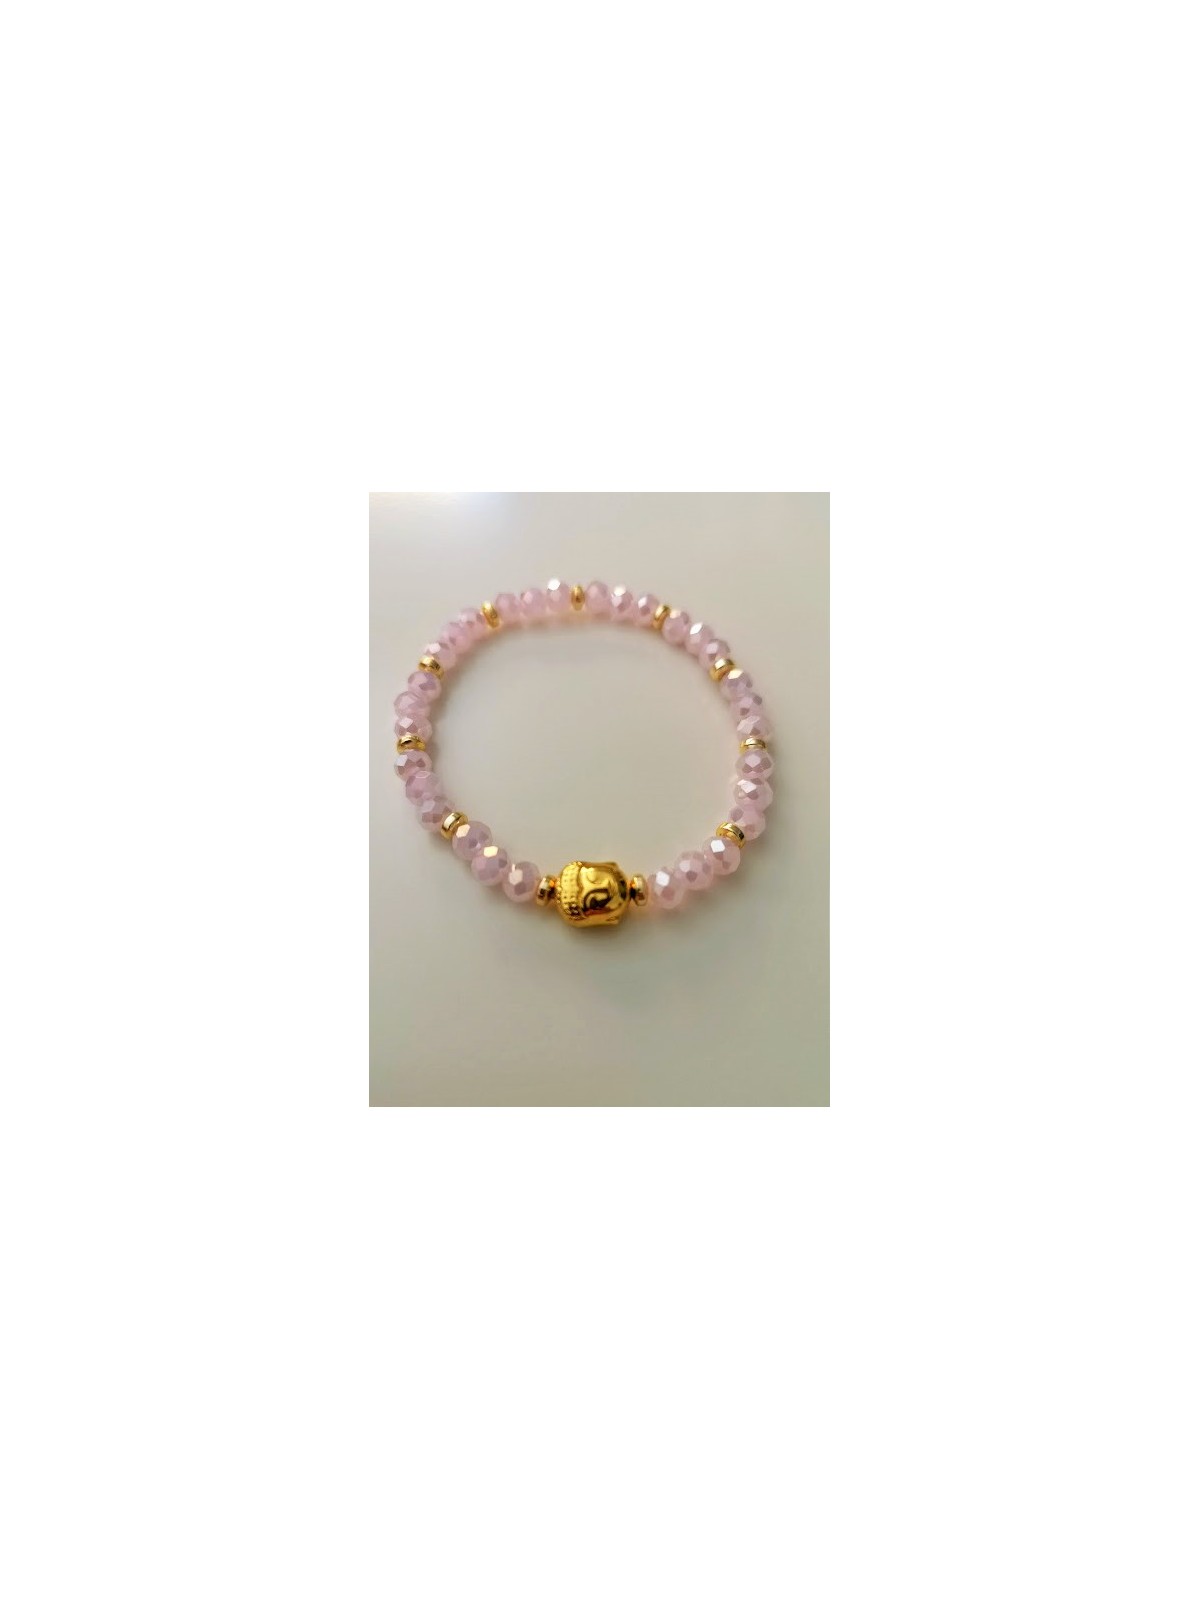 Bracelet en matière synthétique avec perles roses et bouddha doré | 4 vue à plat | Tilleulmenthe boutique de mode femme en ligne